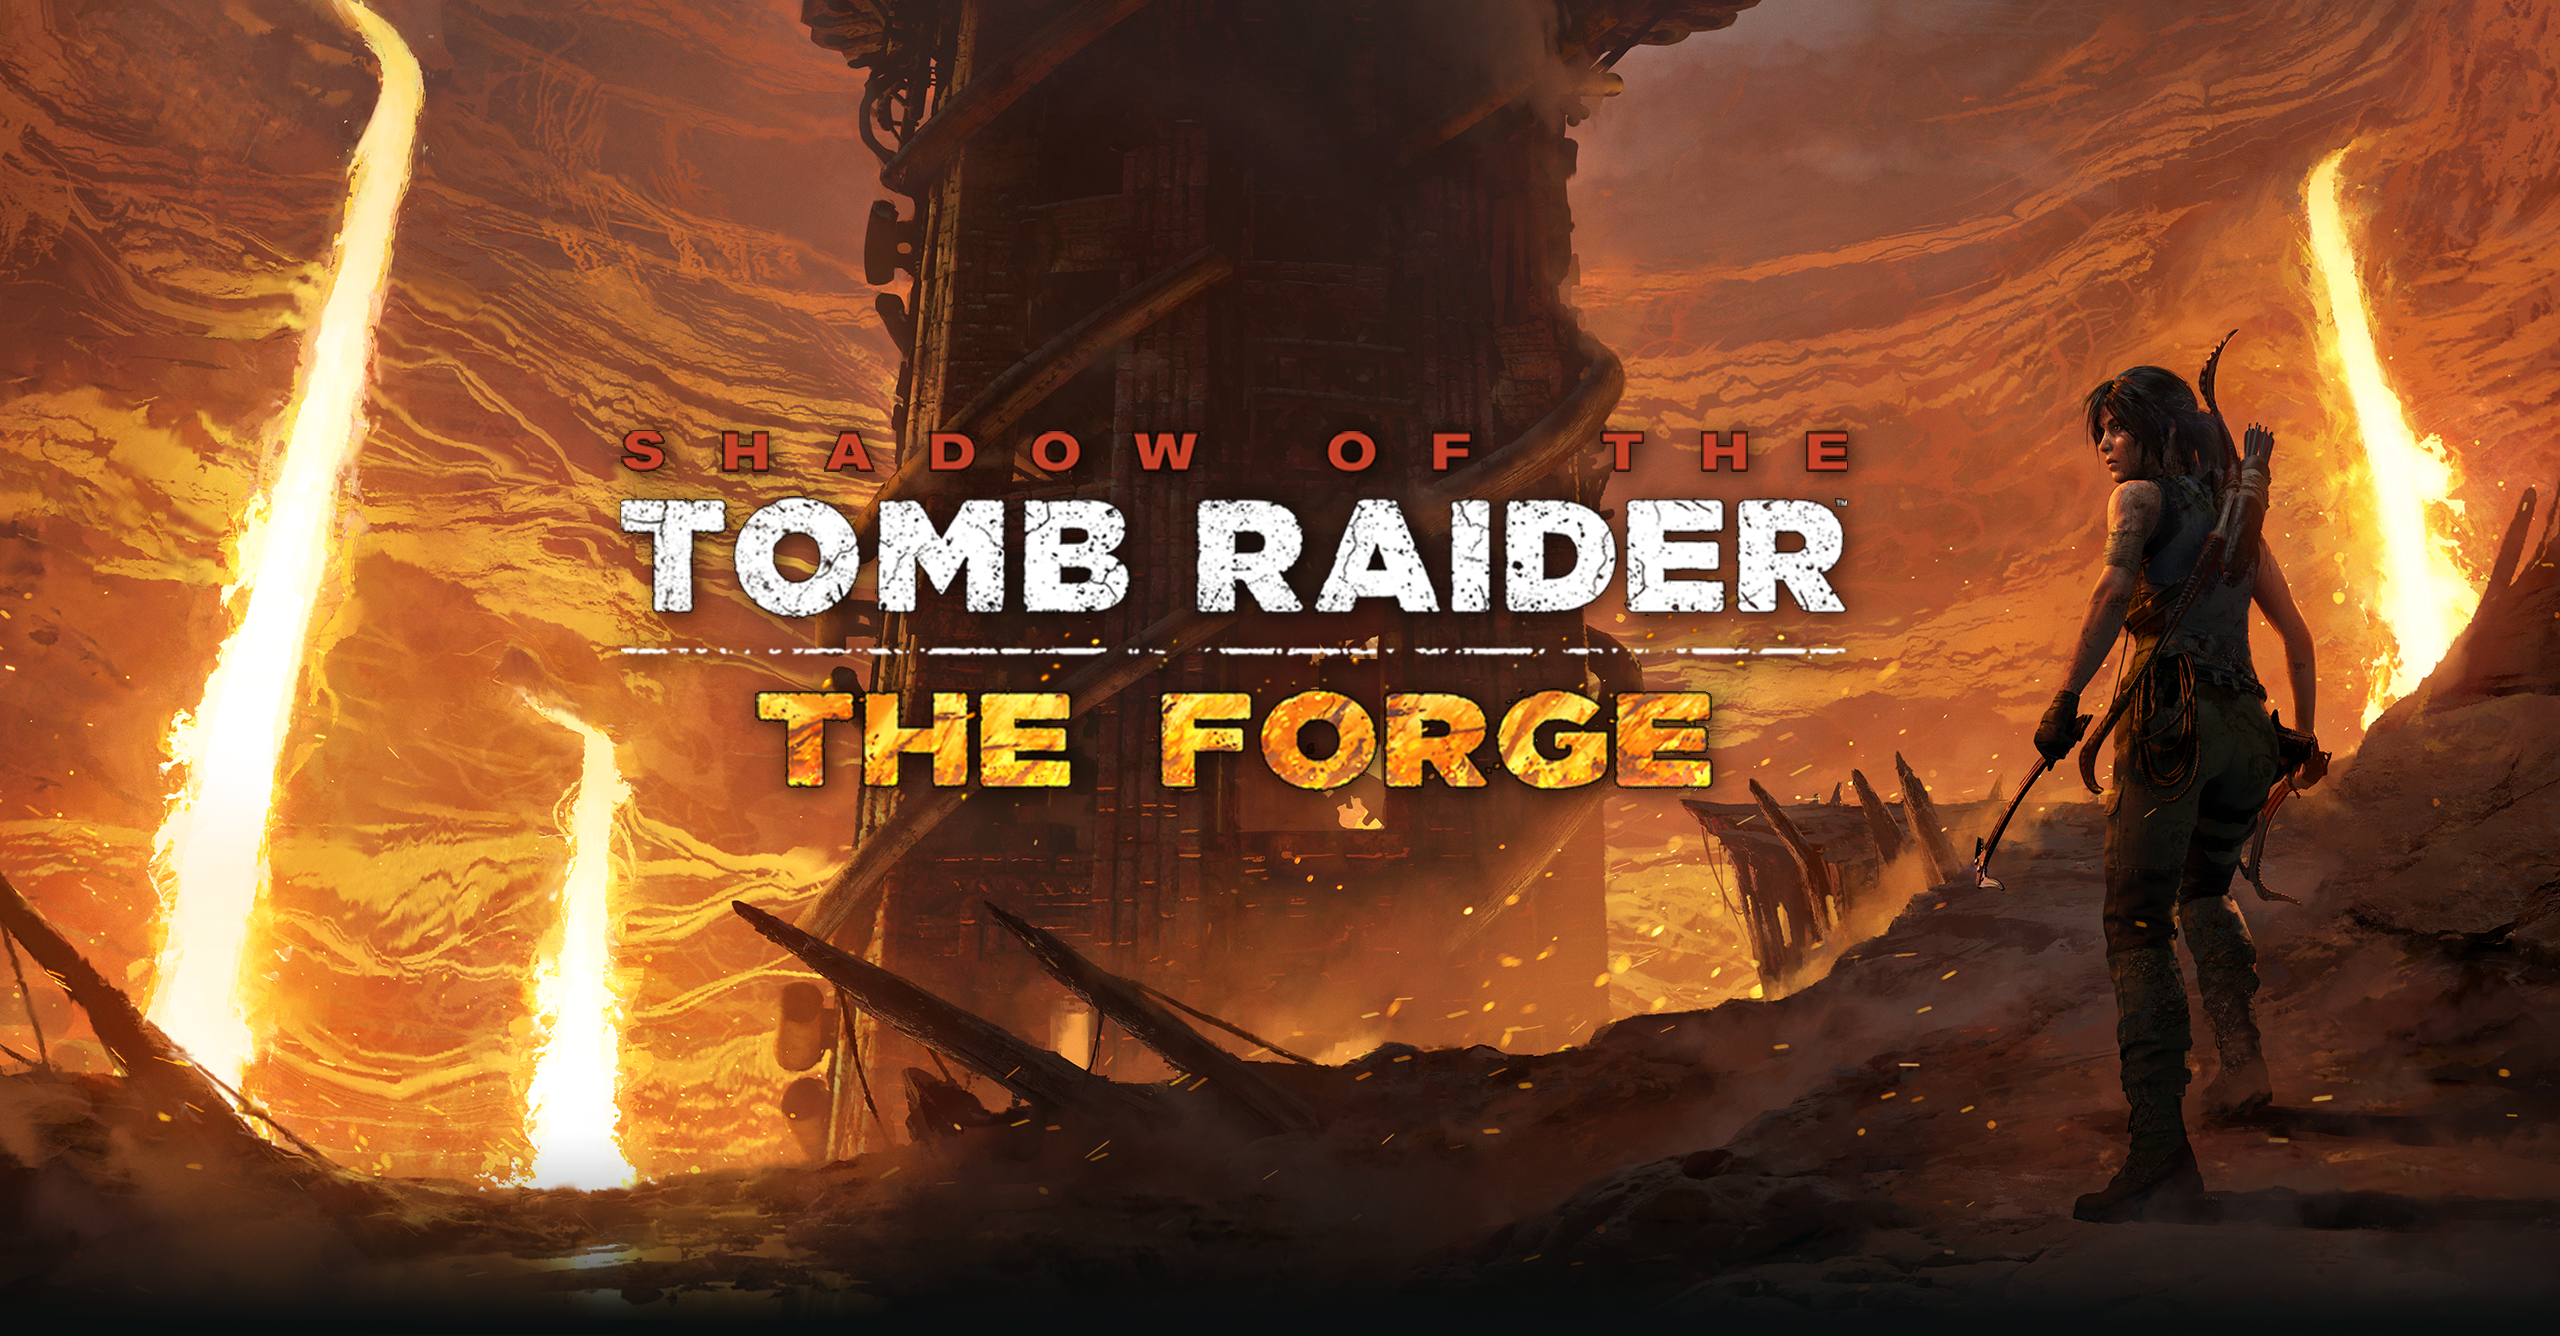 Immagine pubblicata in relazione al seguente contenuto: Square Enix annuncia il DLC The Forge di Shadow of the Tomb Raider | Nome immagine: news28795_The-Forge-Shadow-of-the-Tomb-Raider_3.png